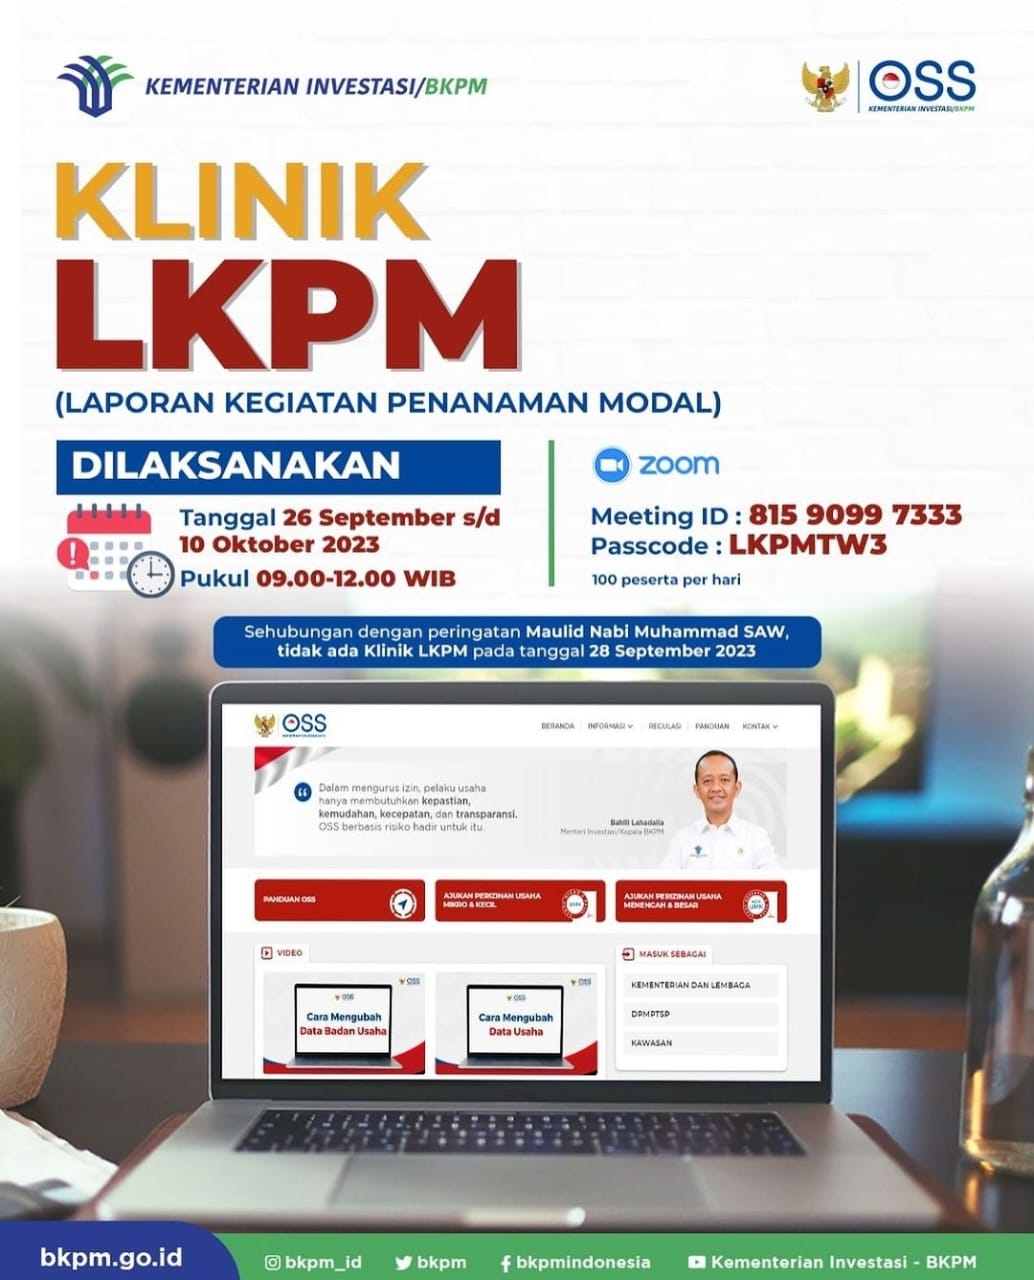 Kementerian Investasi/BKPM kembali membuka layanan konsultasi virtual (Klinik LKPM) melalui Zoom Meeting